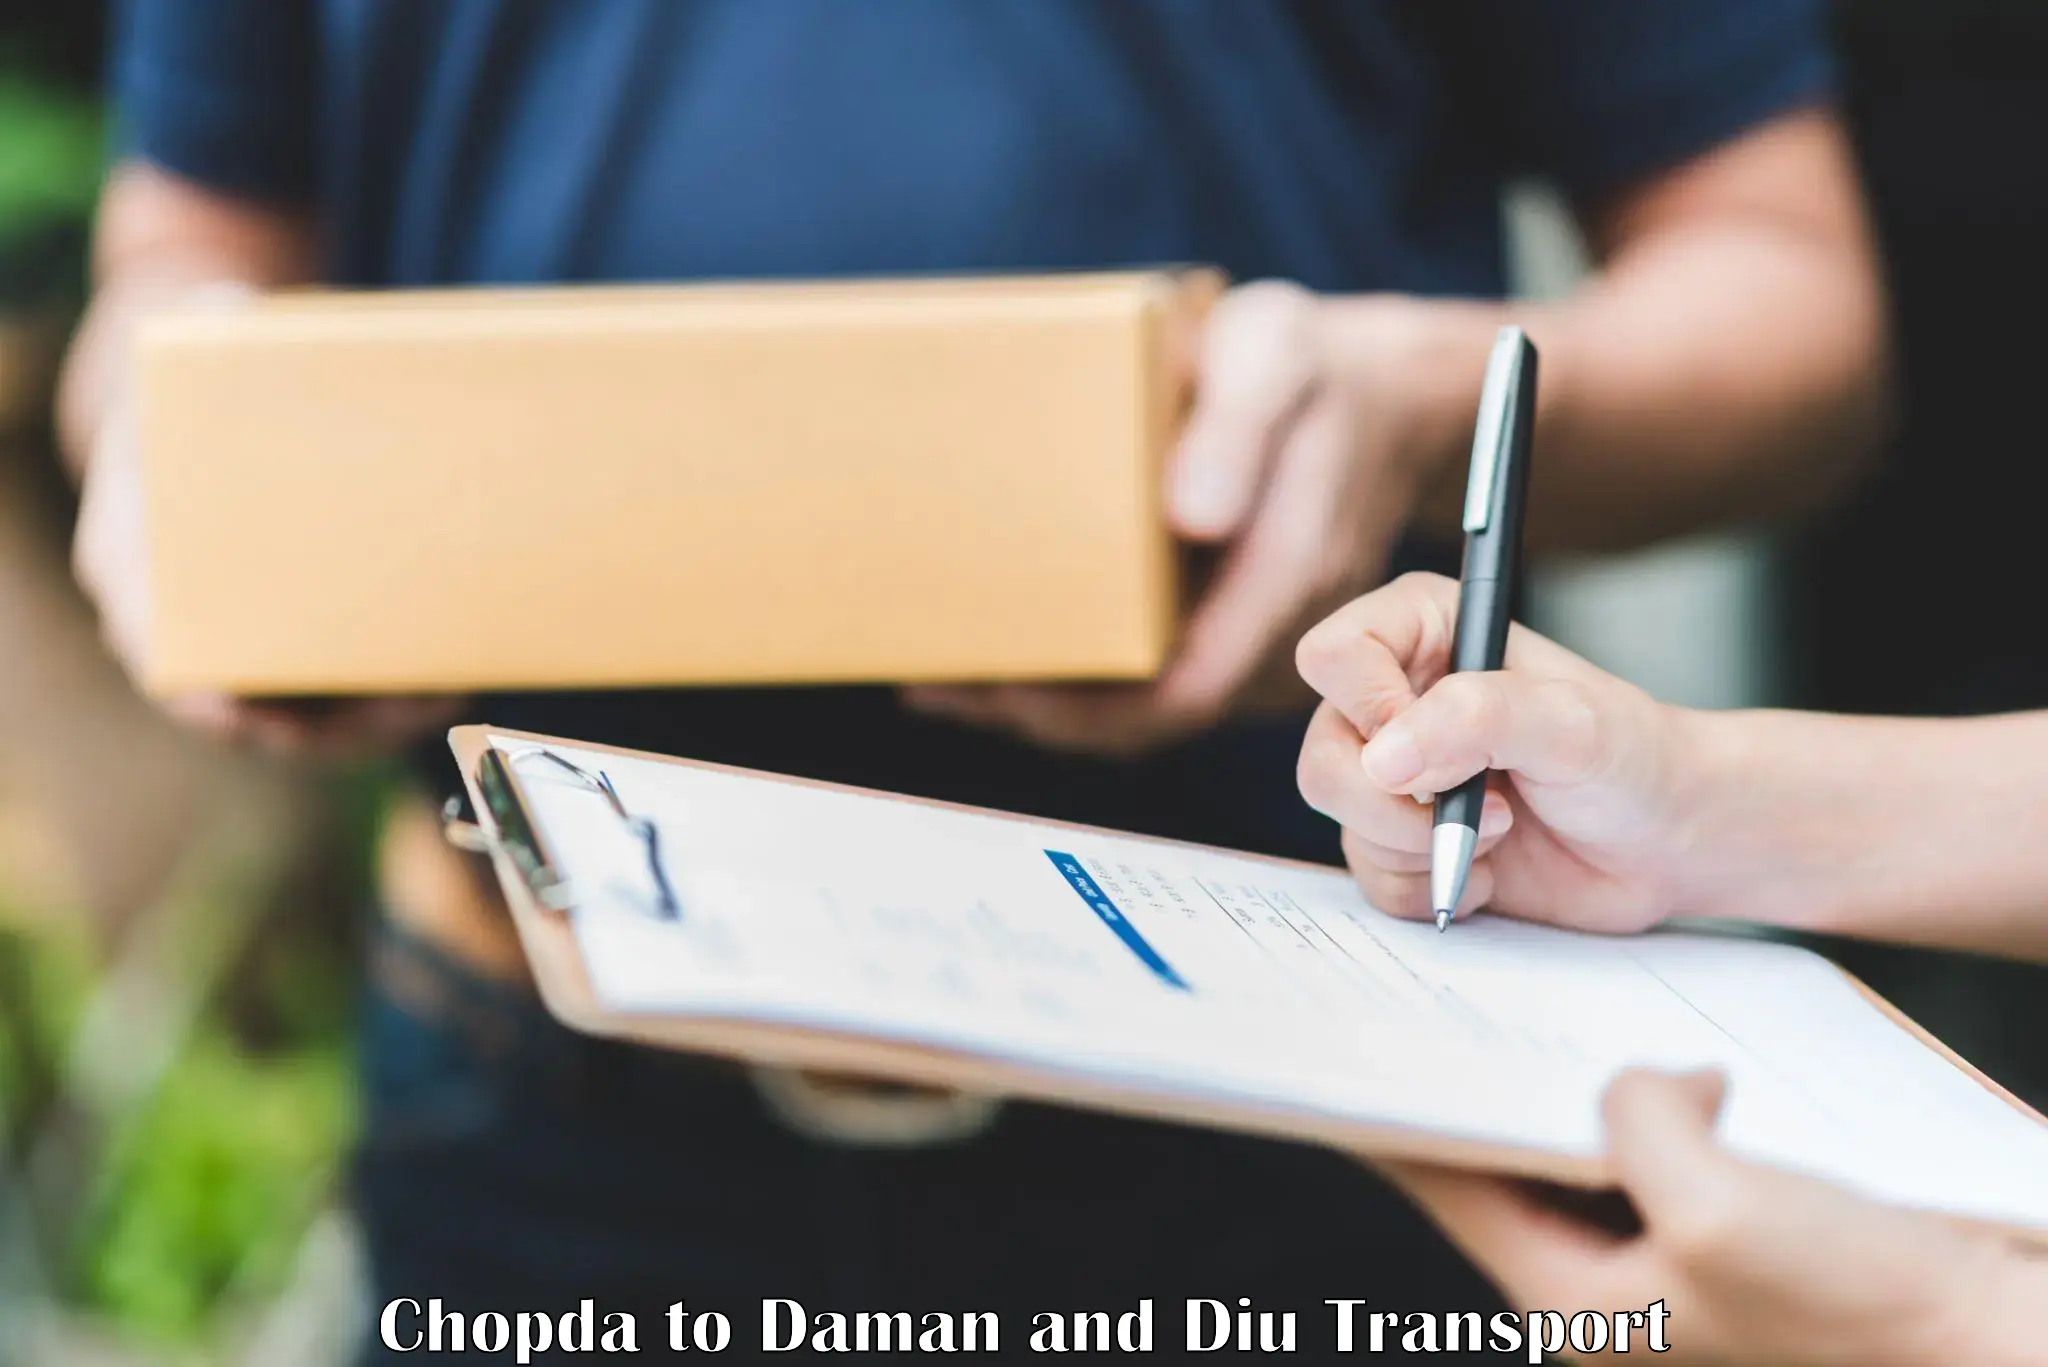 Pick up transport service Chopda to Daman and Diu